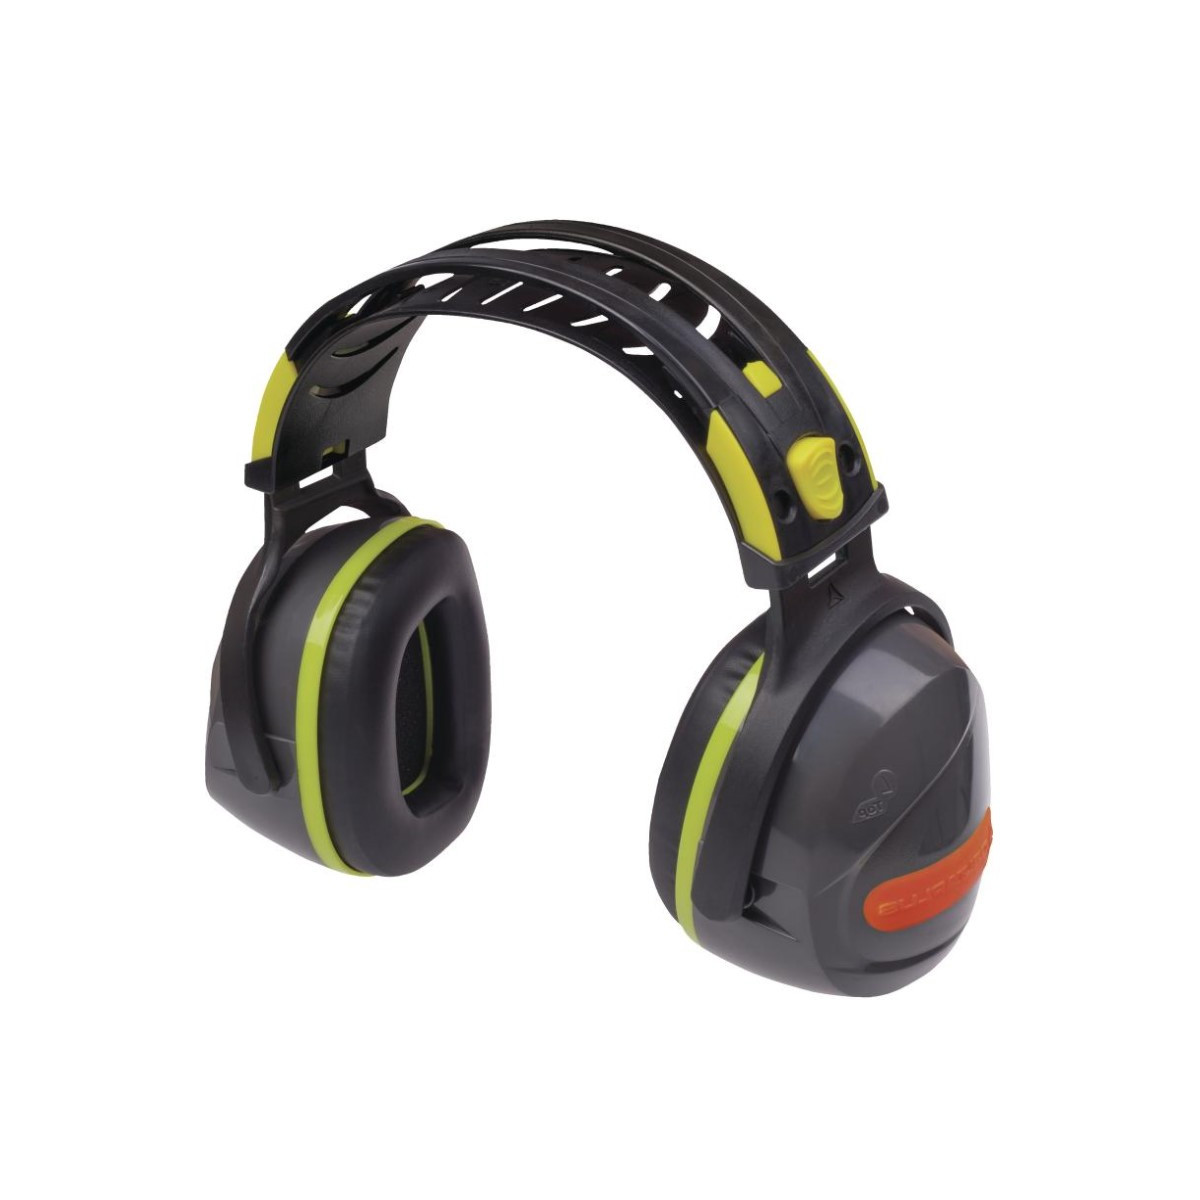 ochrona-sluchu - Nauszniki przeciwhałasowe interjafl snr 30 dB interlagos ochrona słuchu żółty fluo Delta Plus